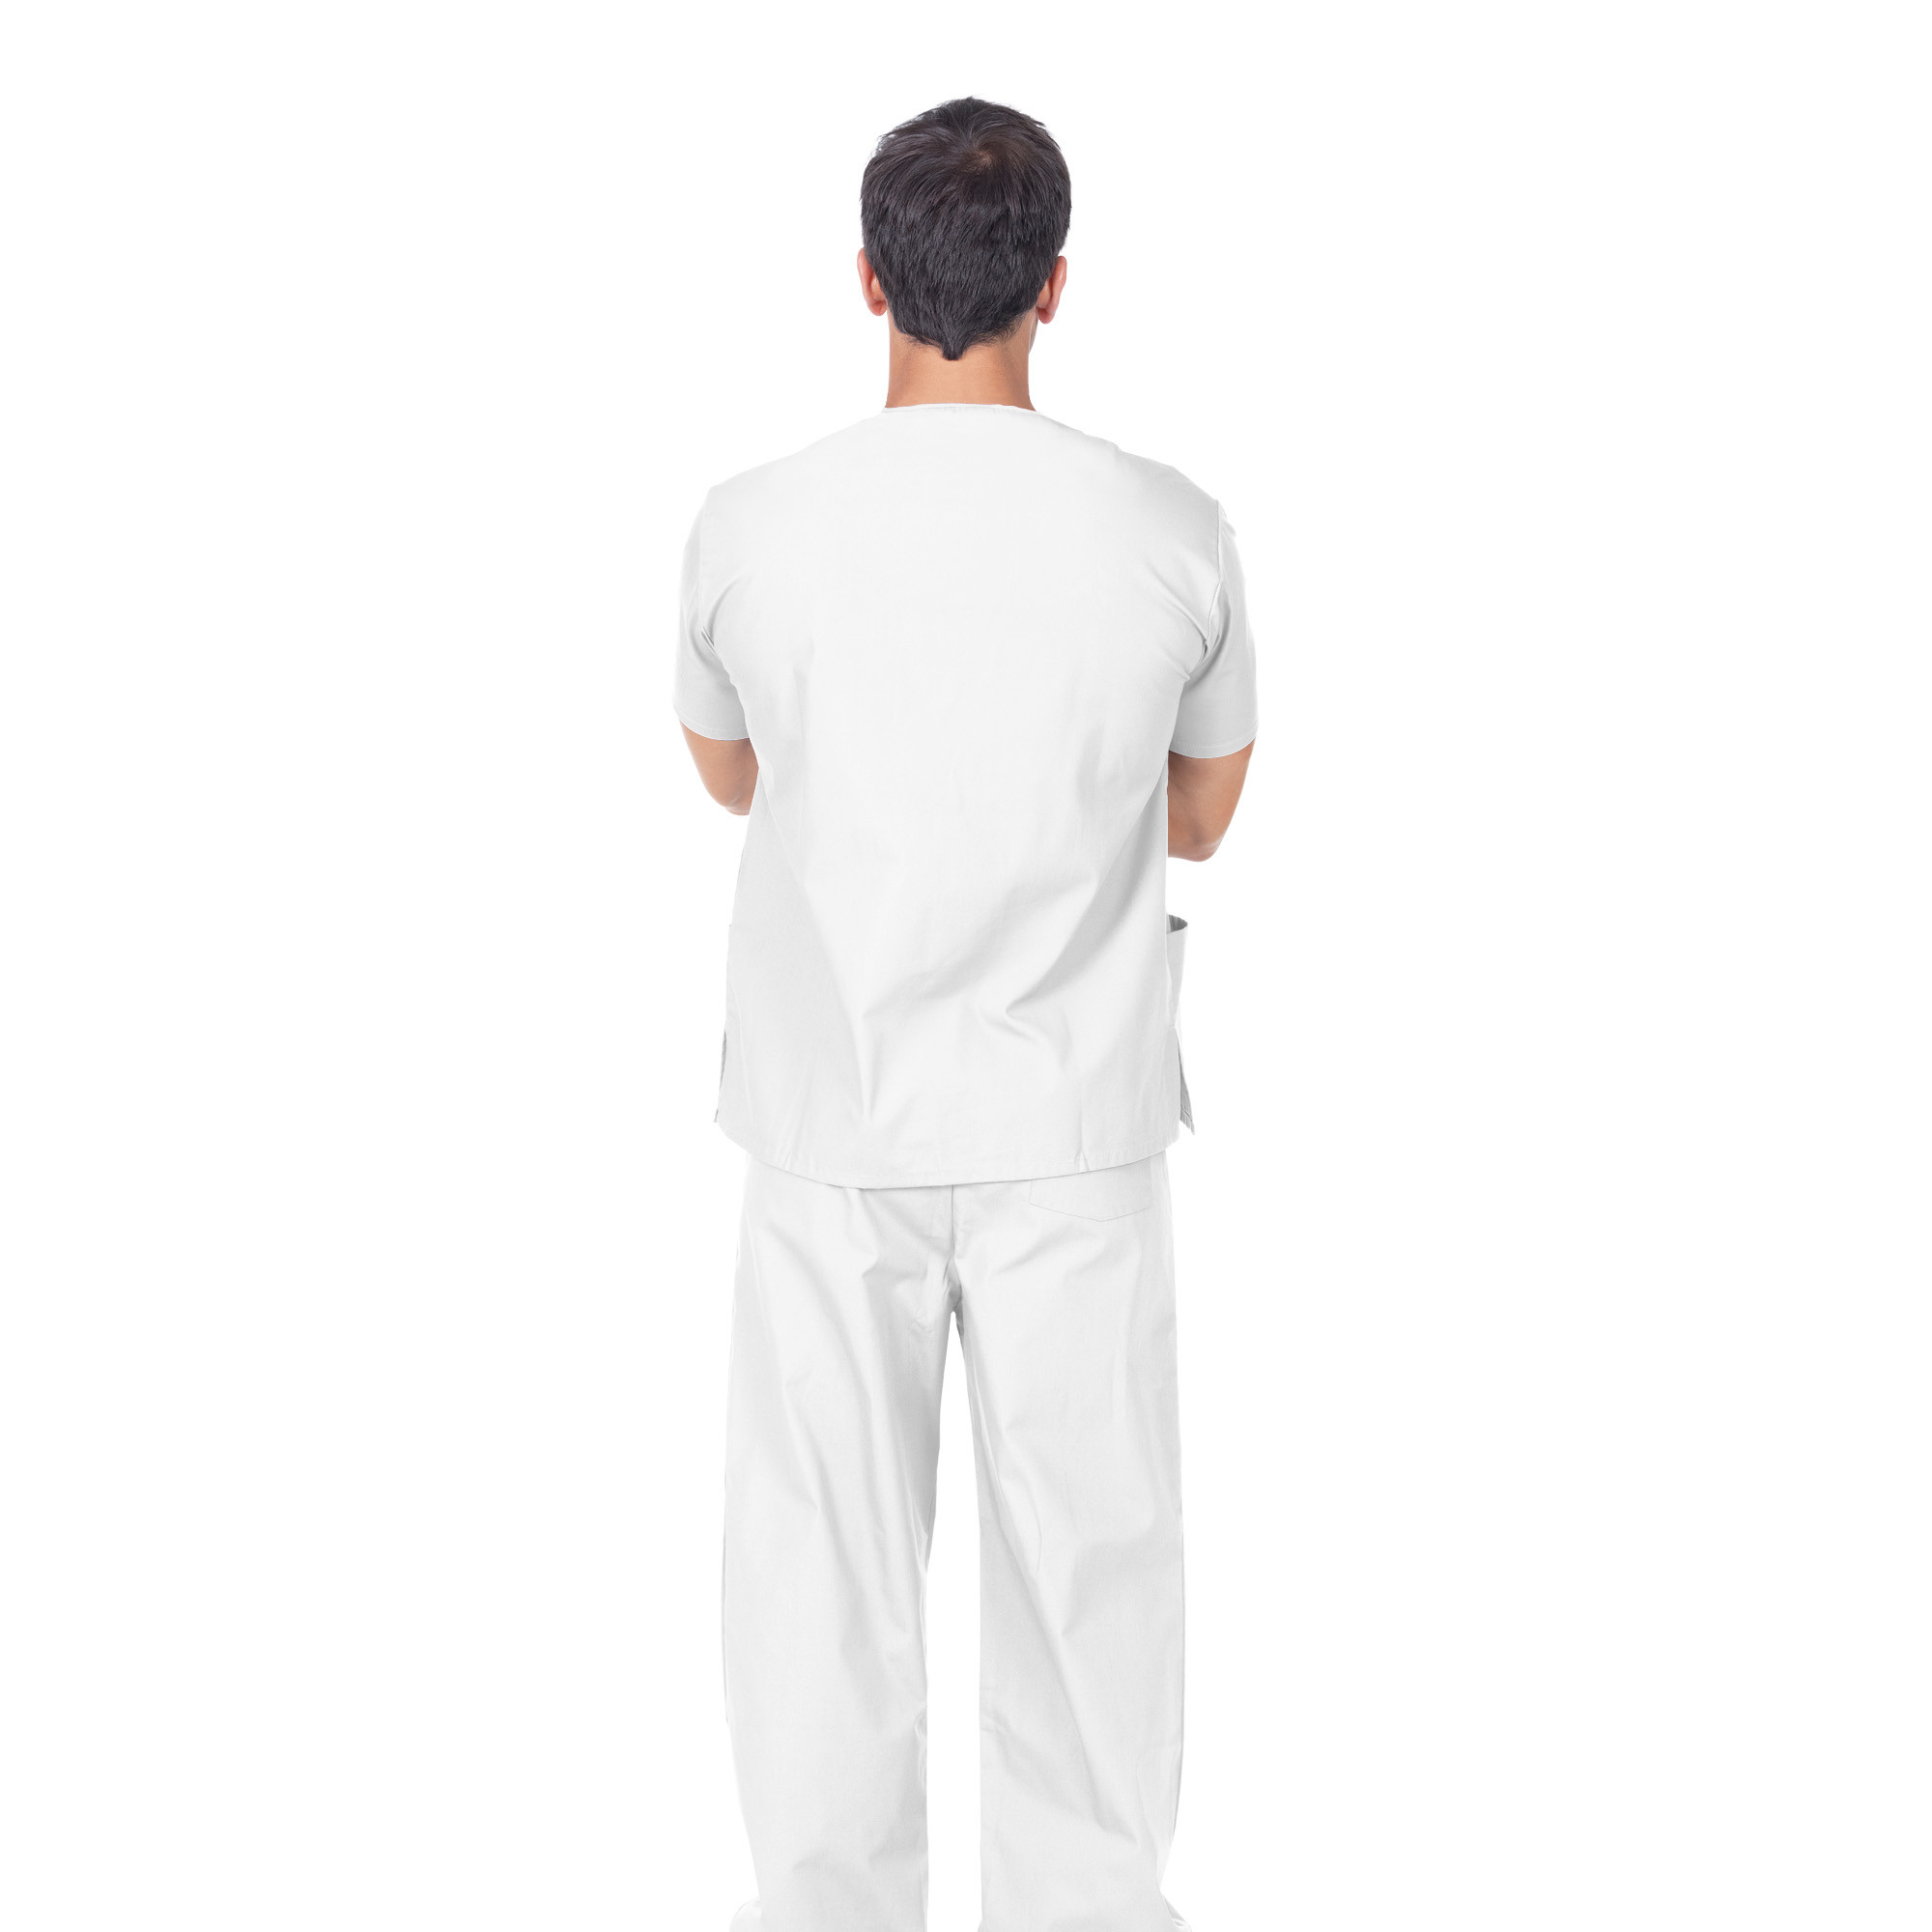 Pantaloni professionali in cotone bianco Unisex taglia Extra Small